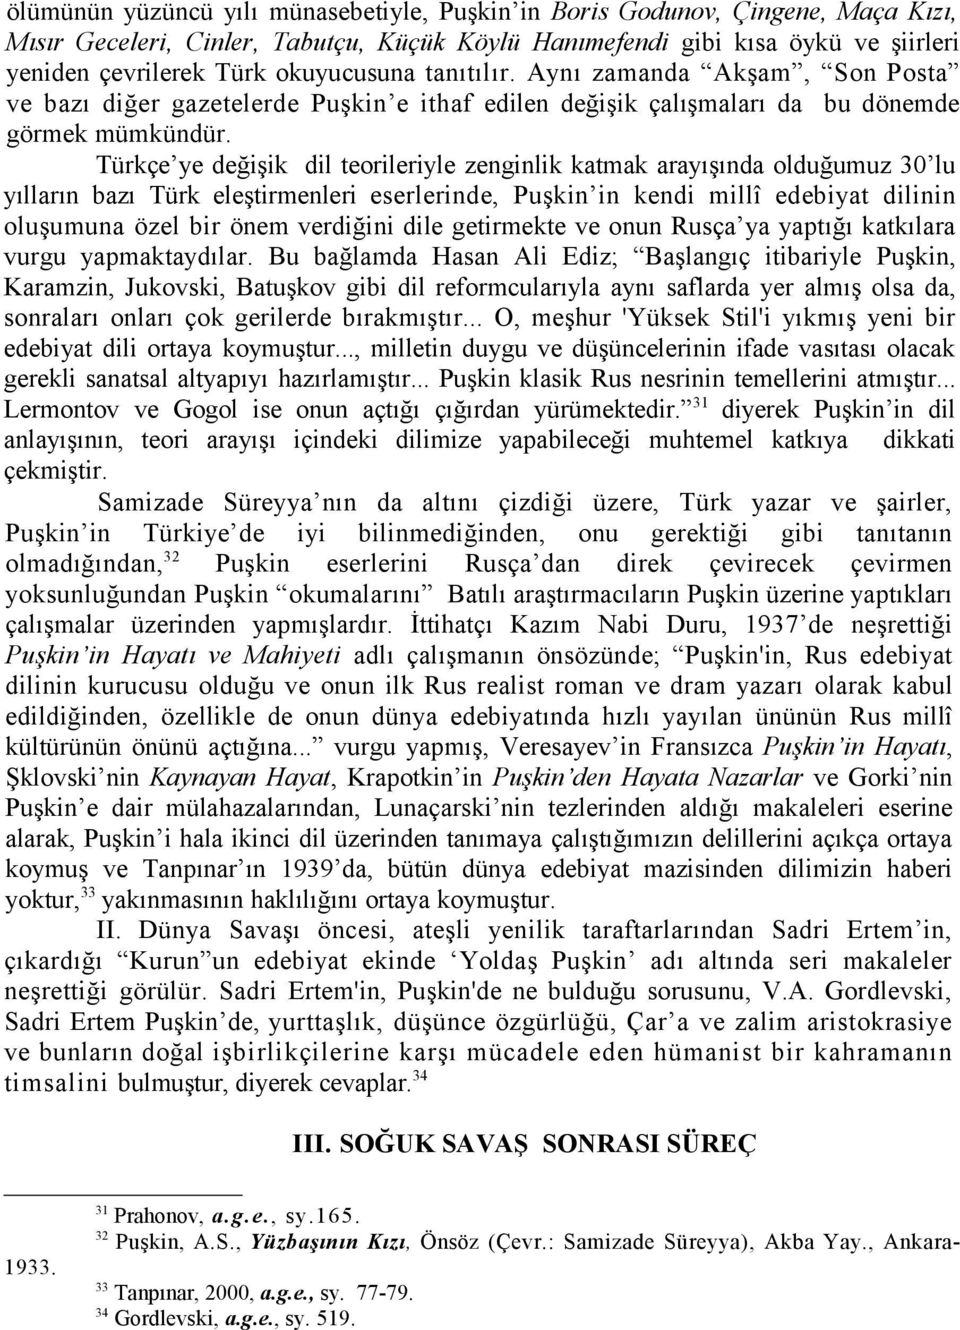 Türkçe ye değişik dil teorileriyle zenginlik katmak arayışında olduğumuz 30 lu yılların bazı Türk eleştirmenleri eserlerinde, Puşkin in kendi millî edebiyat dilinin oluşumuna özel bir önem verdiğini